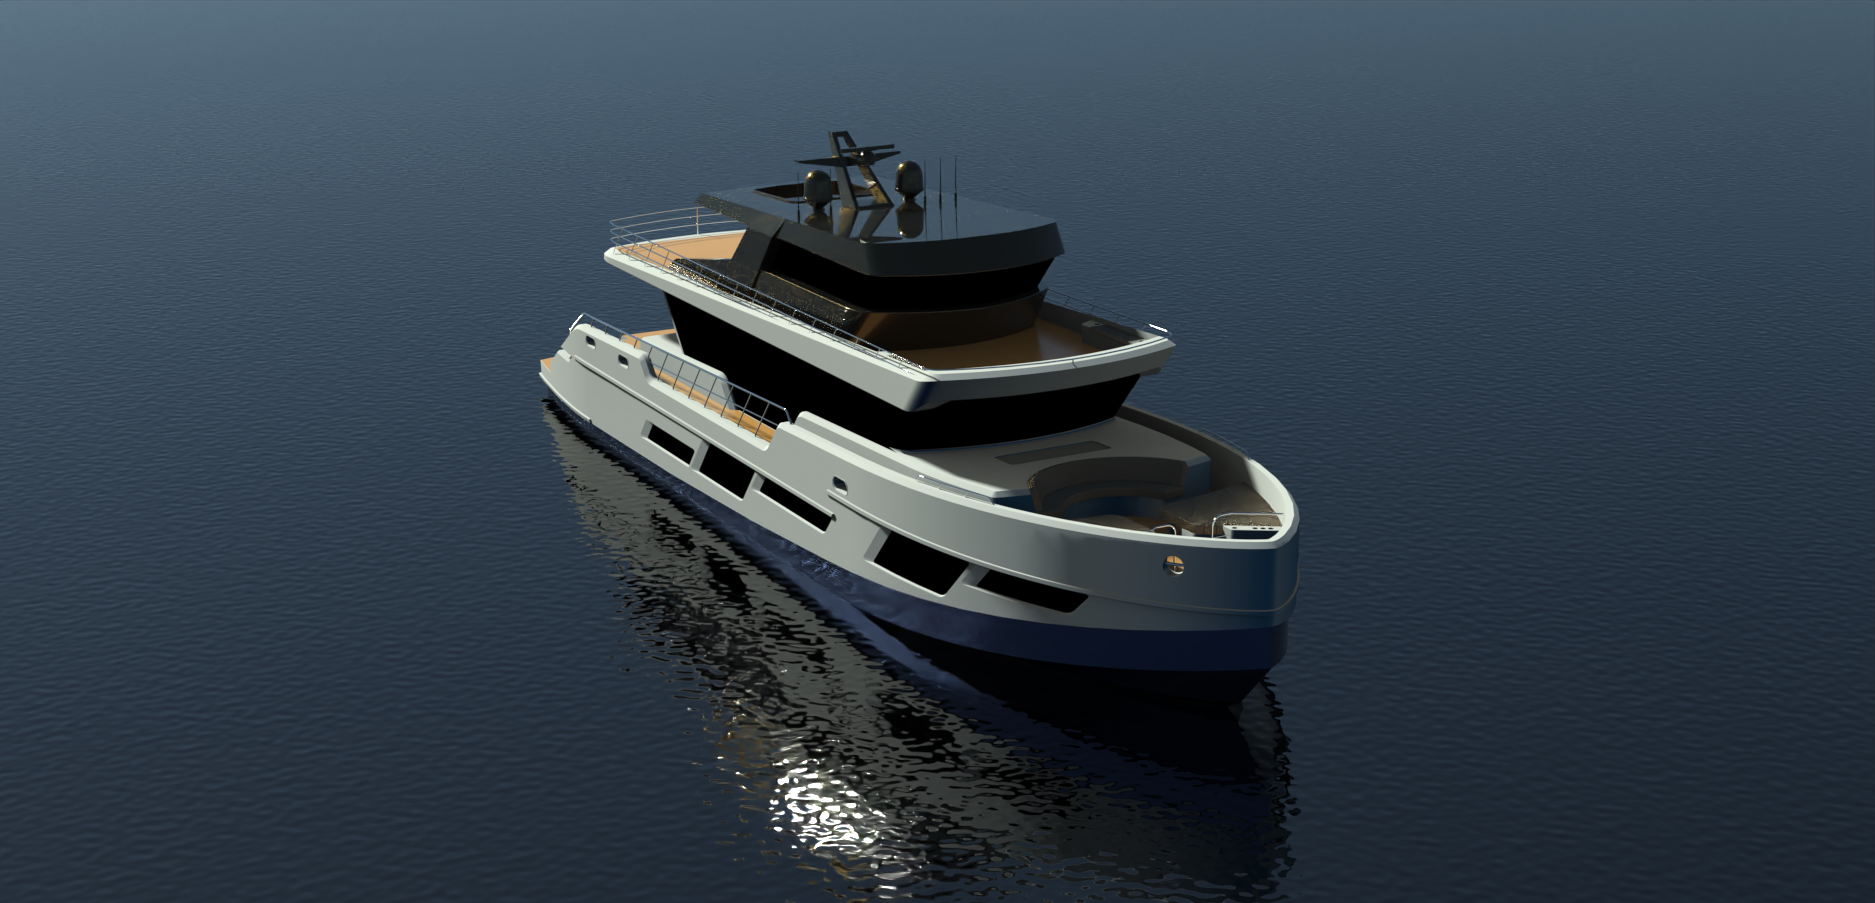 CLX96游艇模型